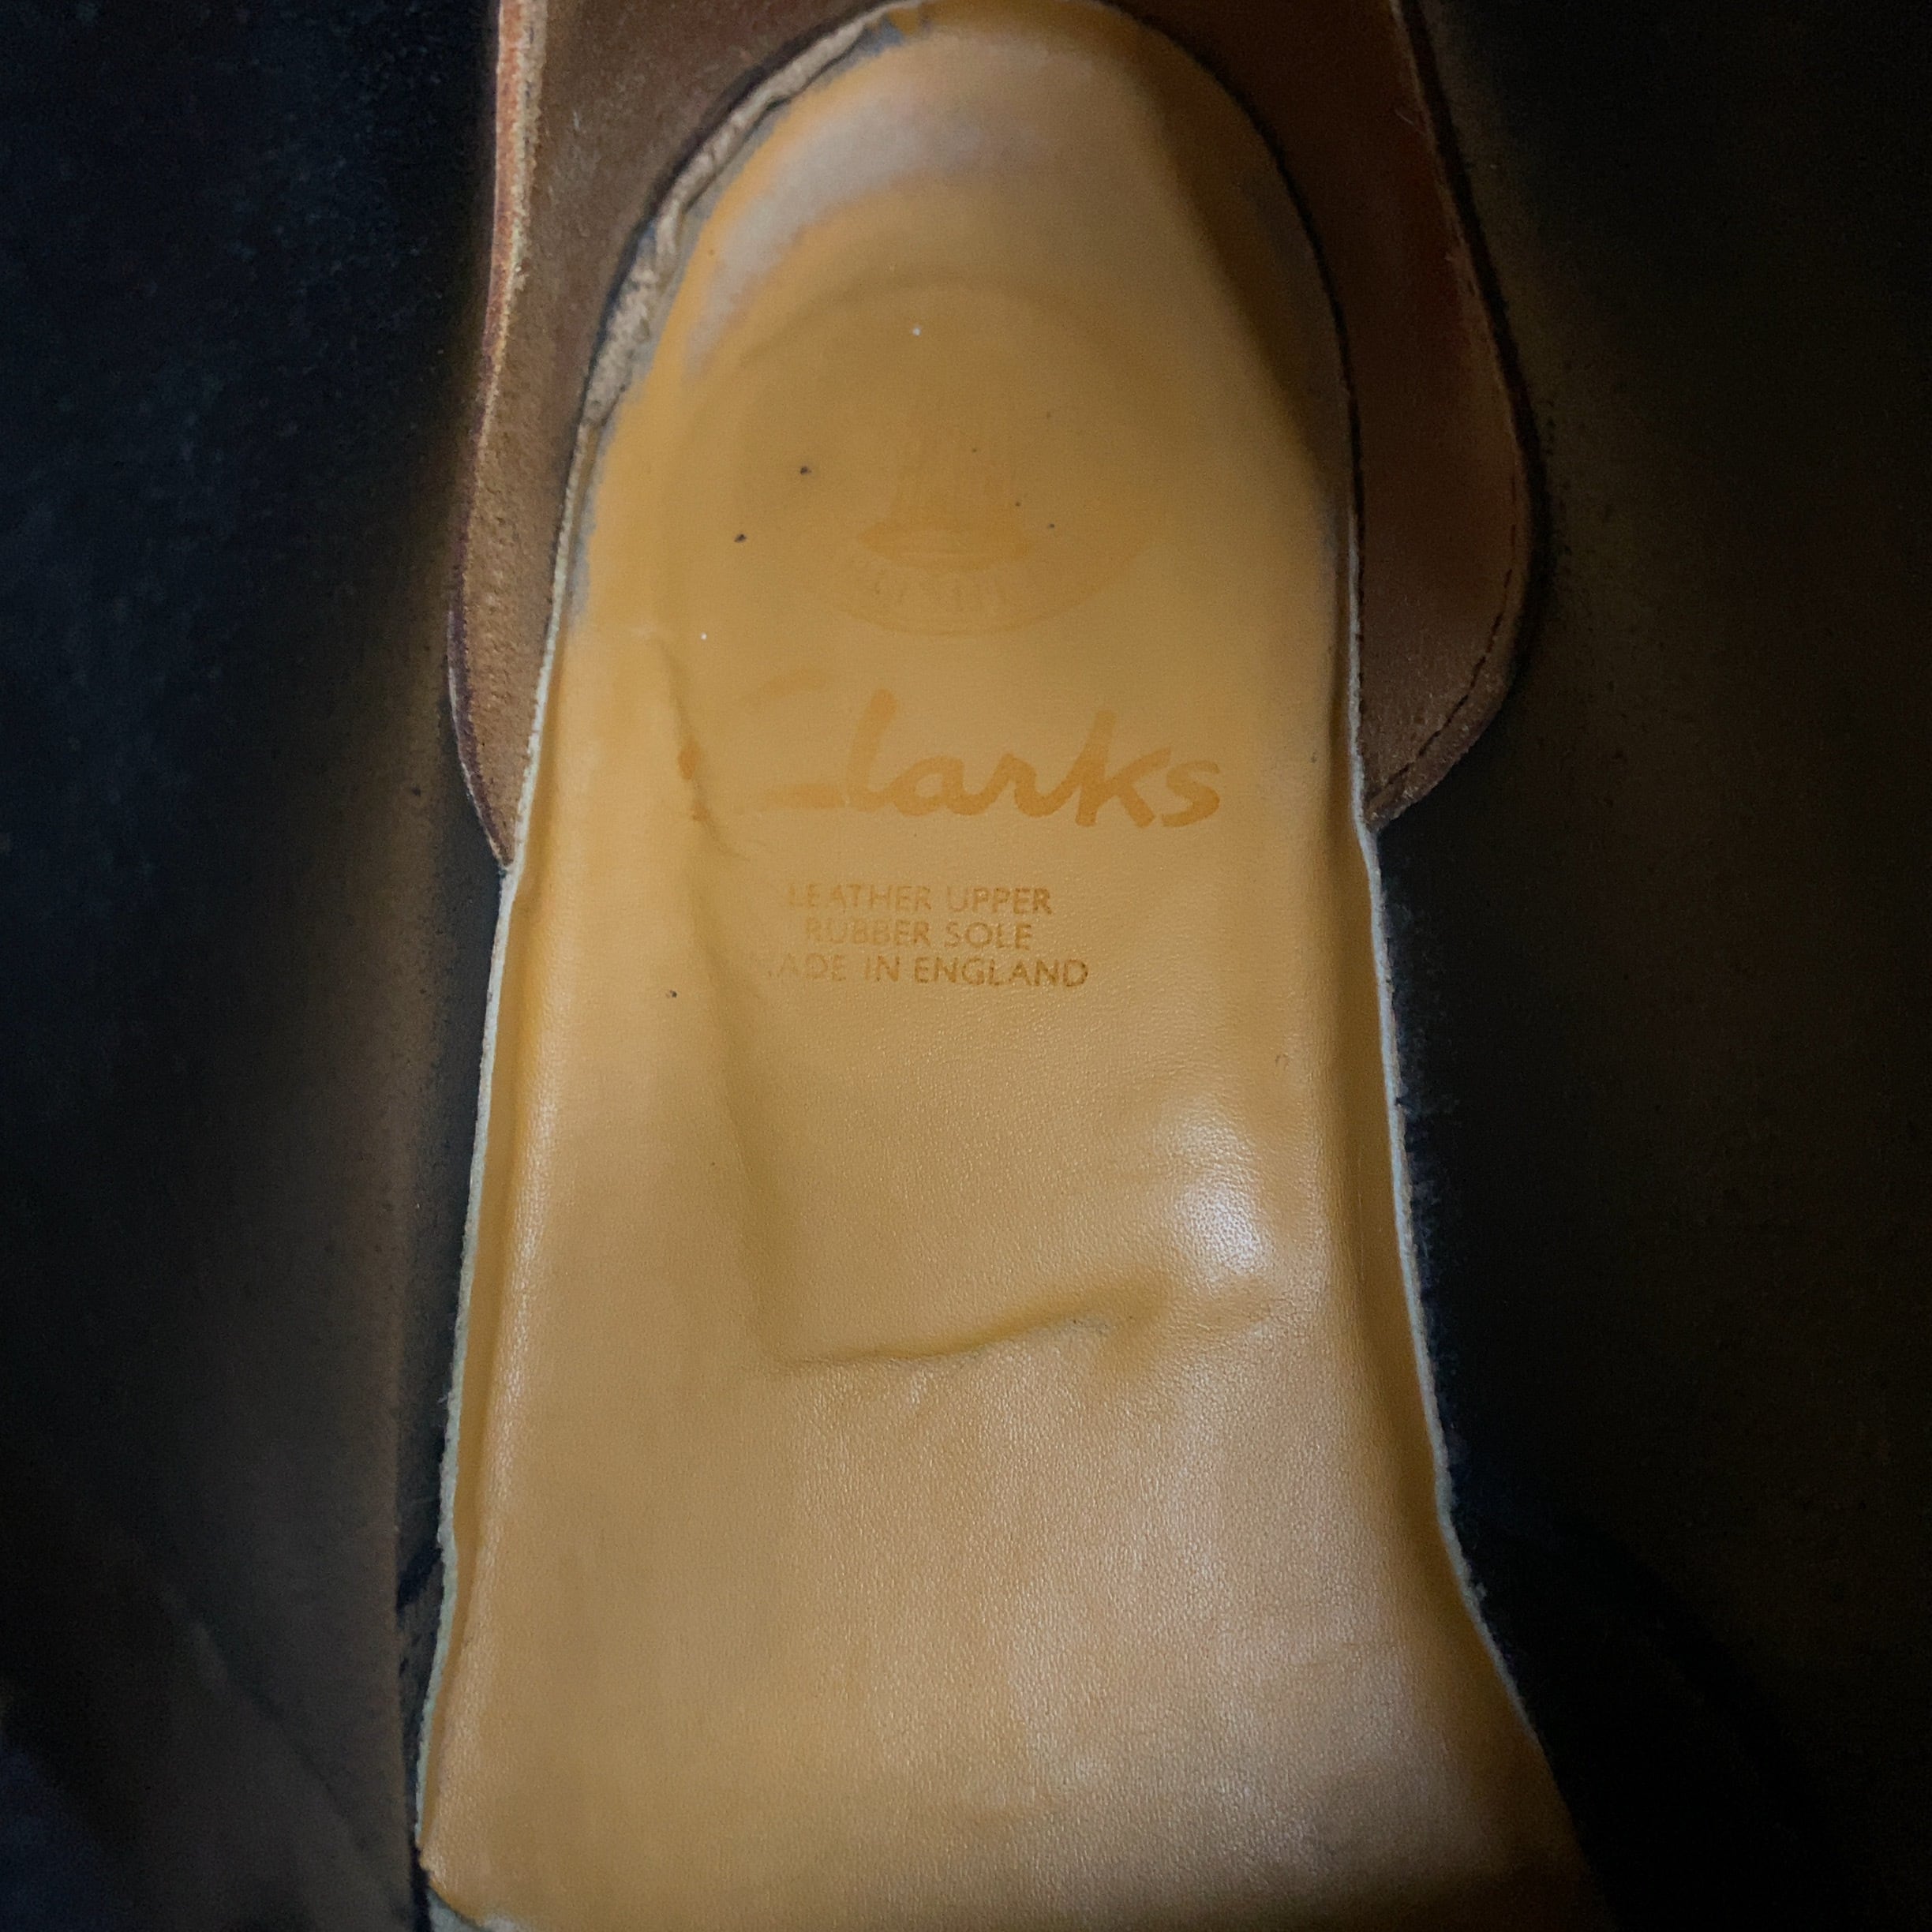 Clarks / 90's Desert Boot / Made in England / 26.5cm程度